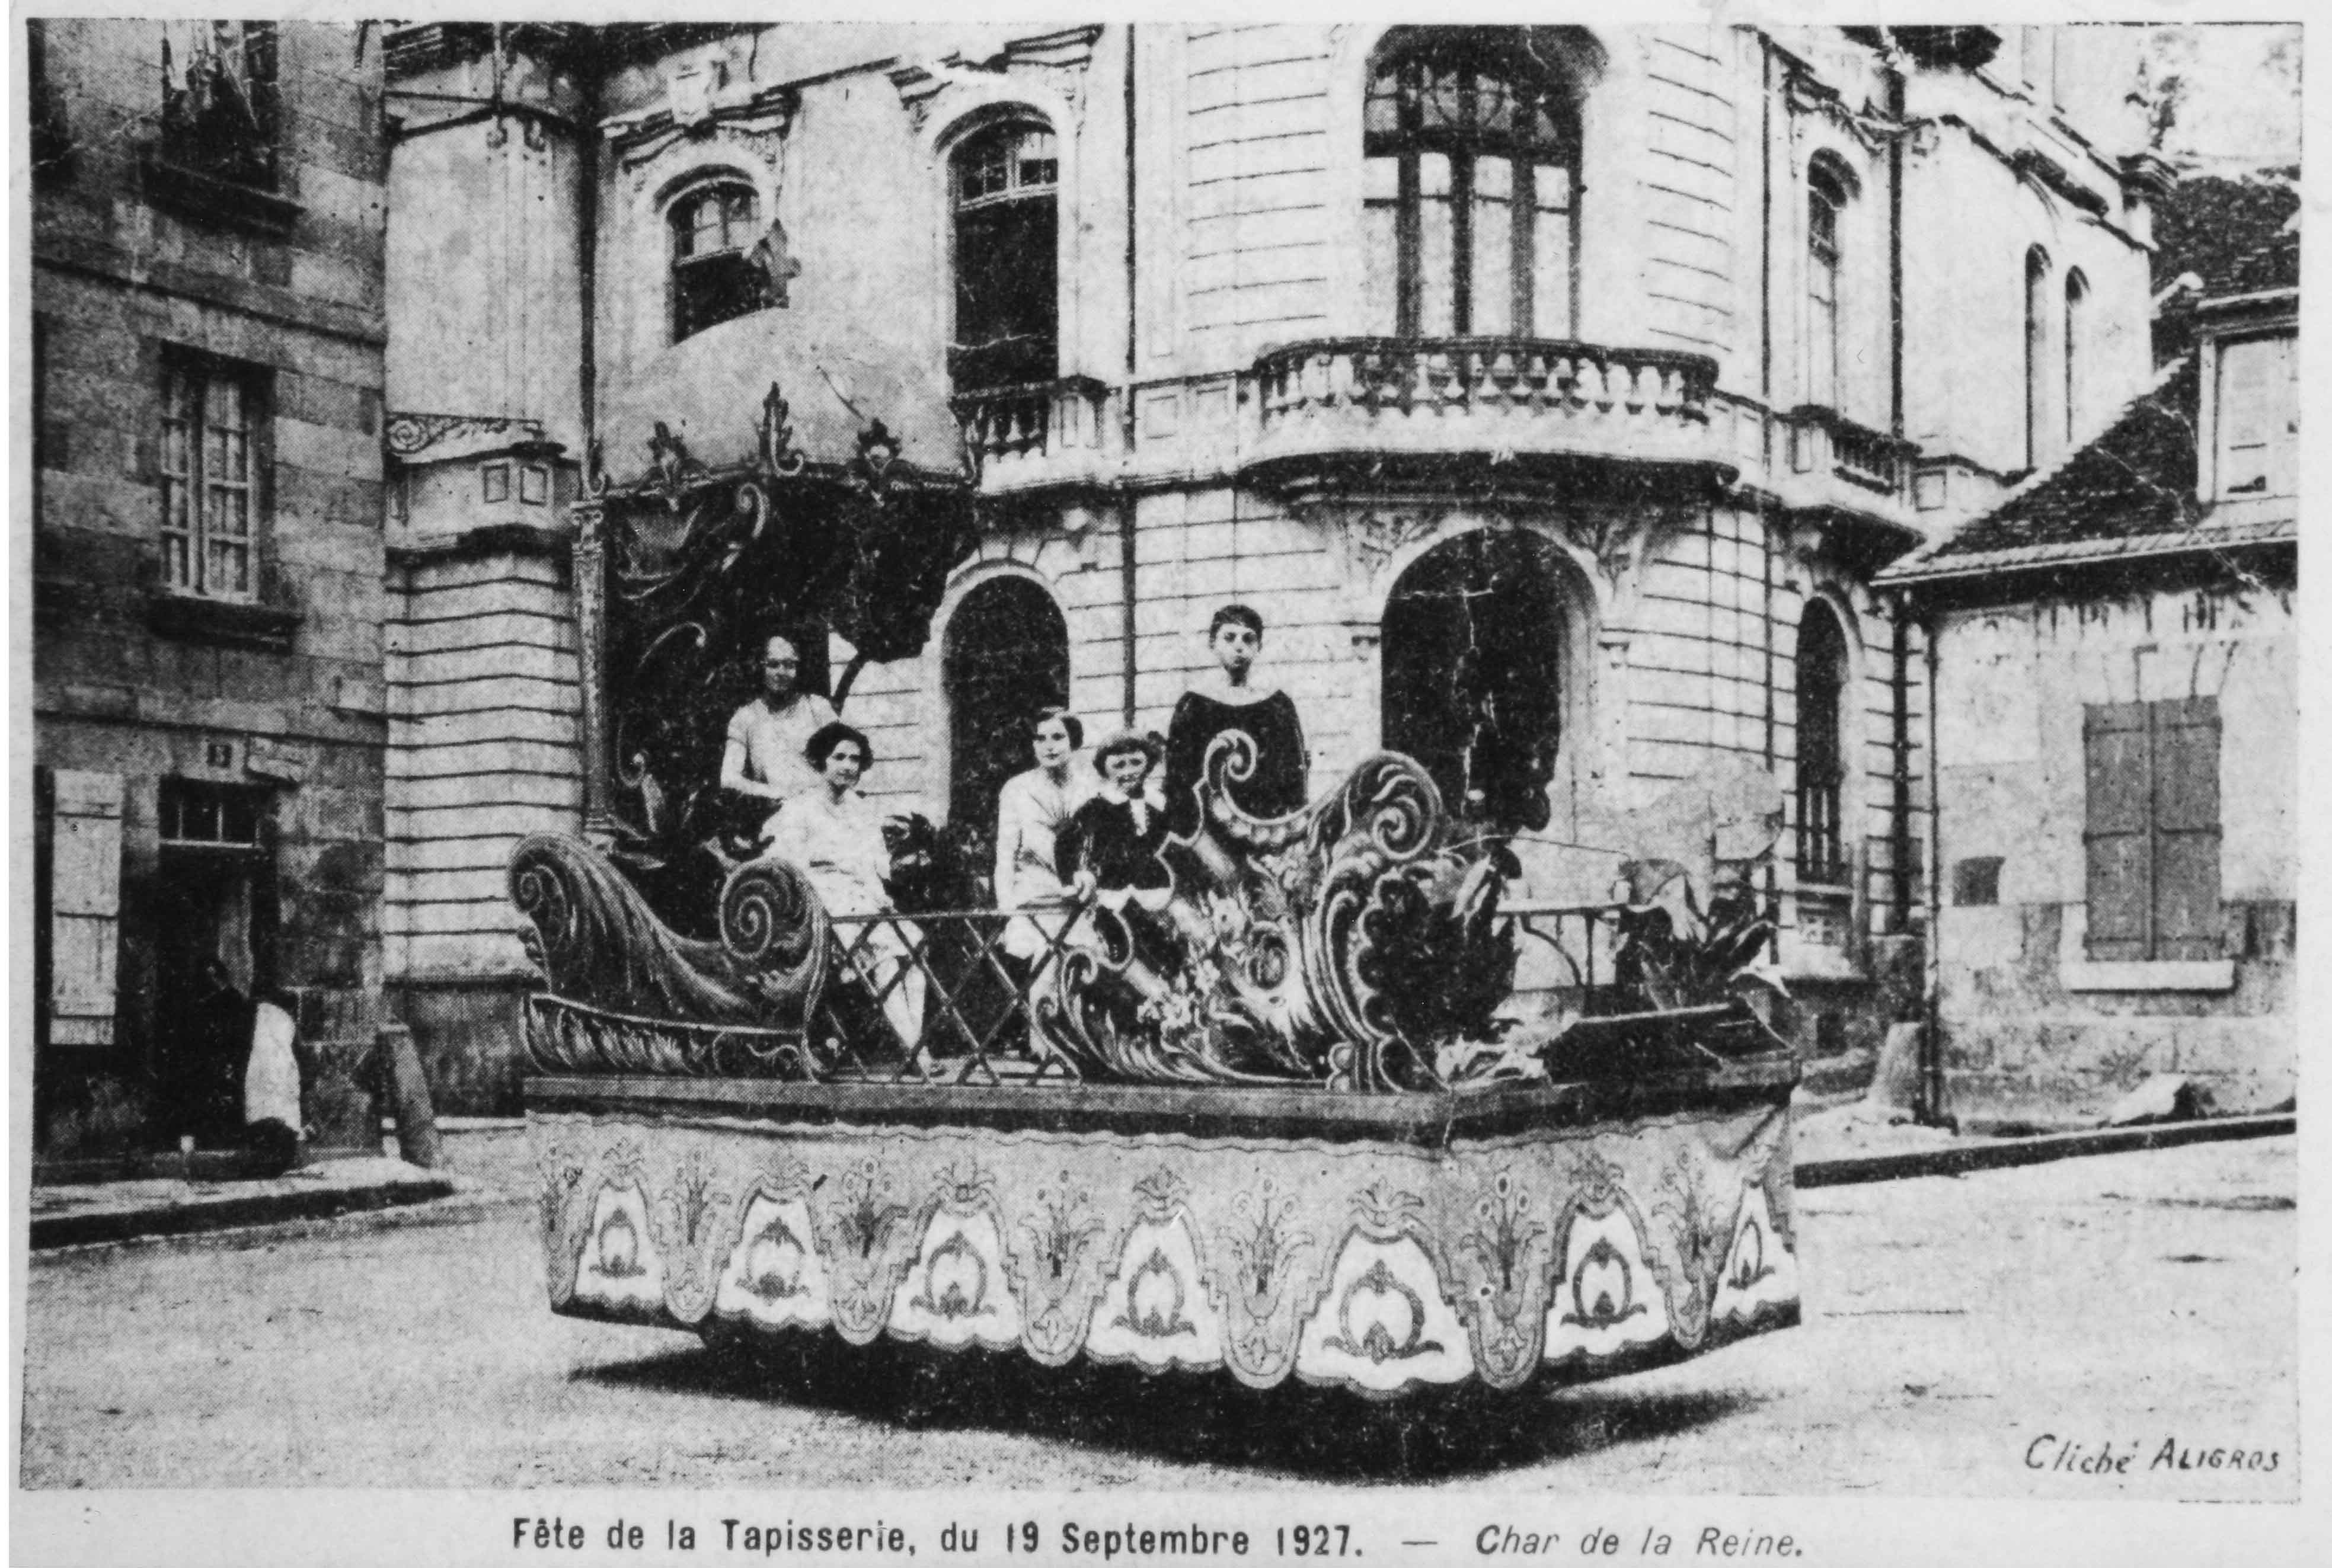 Carte postale représentant, devant la Caisse d'épargne, l'un des chars de la fête de la tapisserie qui eut lieu le 19 septembre 1927 (centre de documentation du M. de la Tapisserie). 